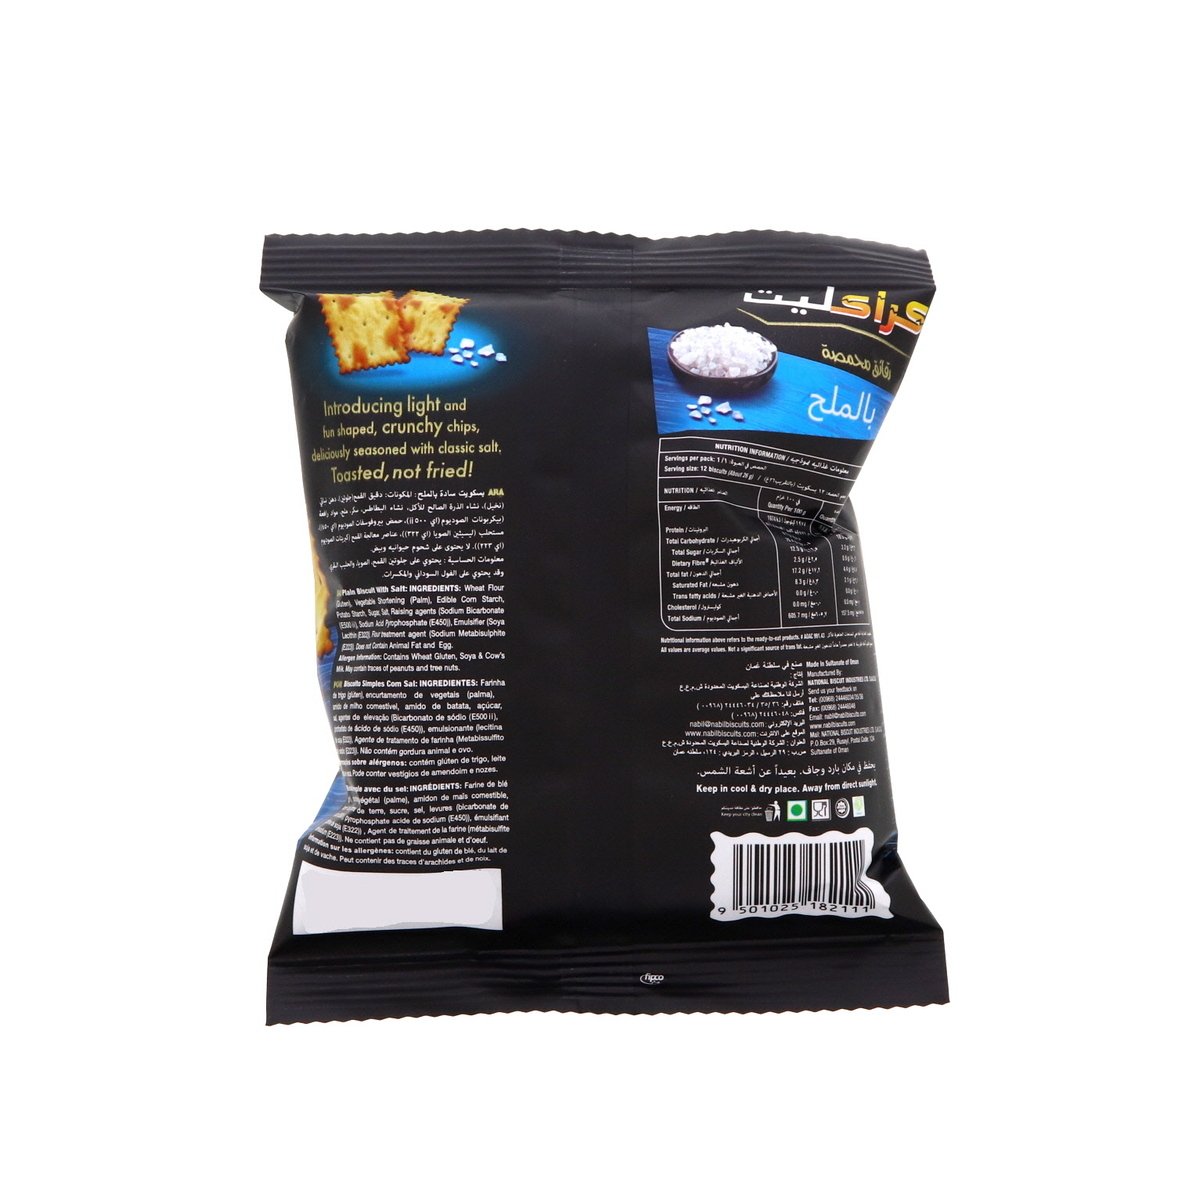 Kracklite Toasted Chips Salted 26 g